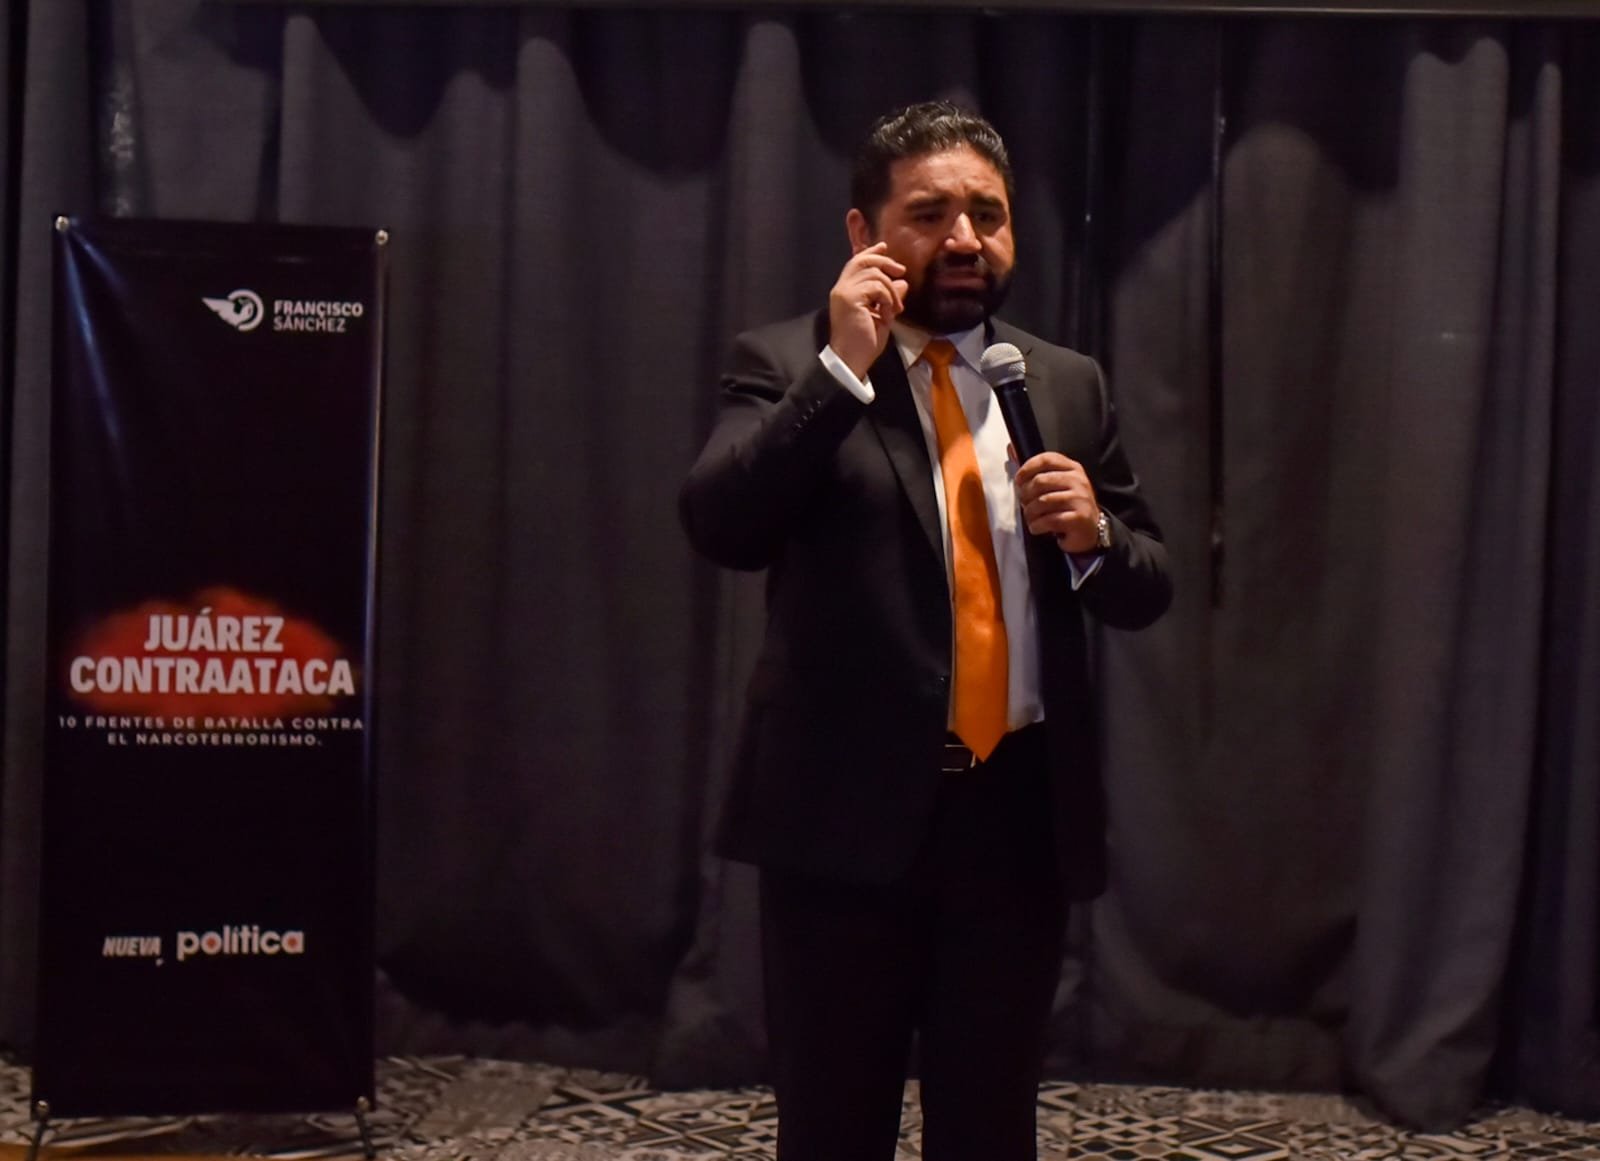 Juárez Contraataca; presenta Francisco Sánchez acciones estratégicas para luchar por familias juarenses